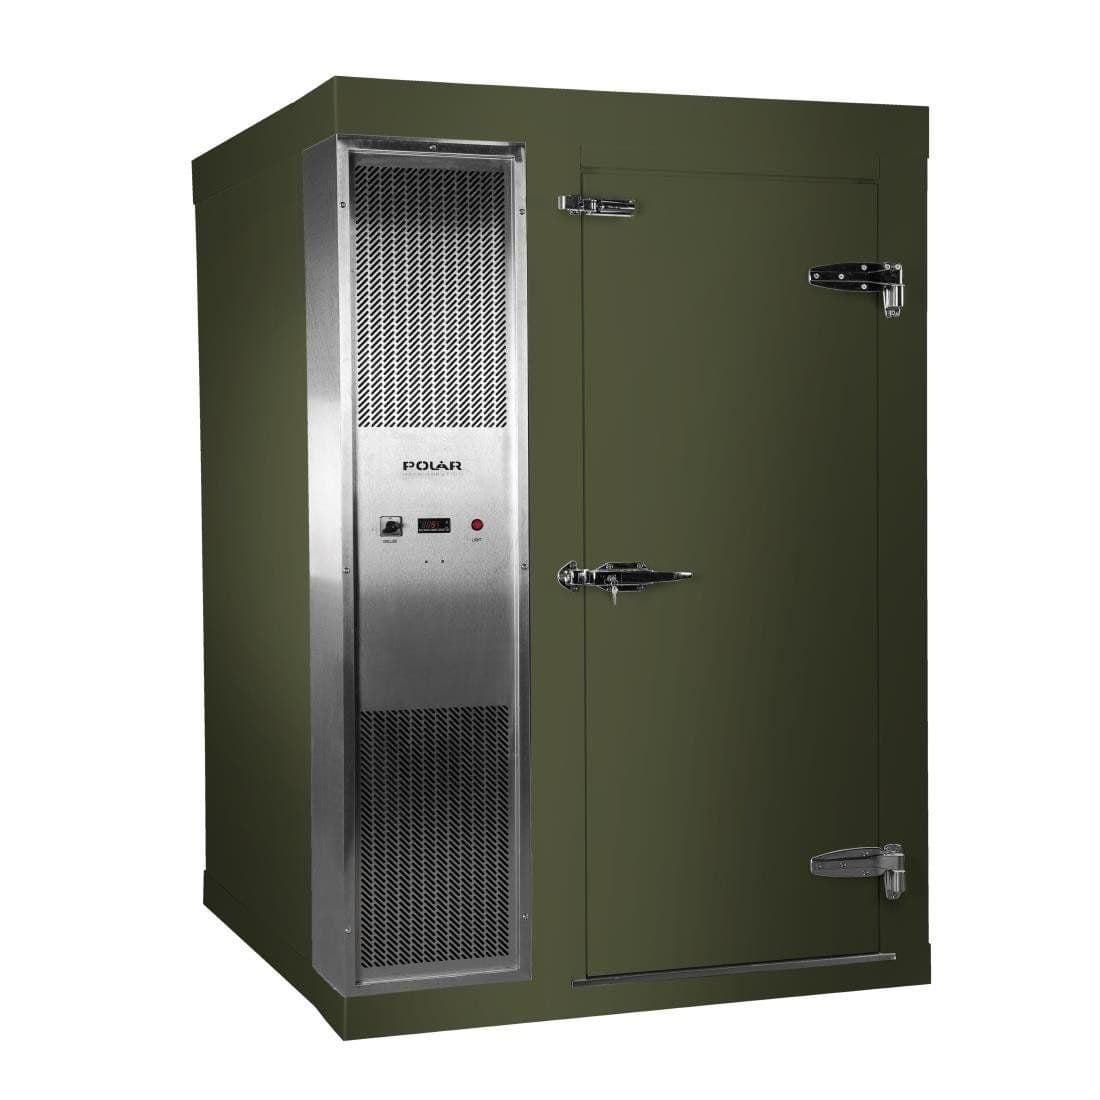 DS484-FGN Polar U-Series 1.8 x 1.5m Integral Walk In Freezer Room Green JD Catering Equipment Solutions Ltd